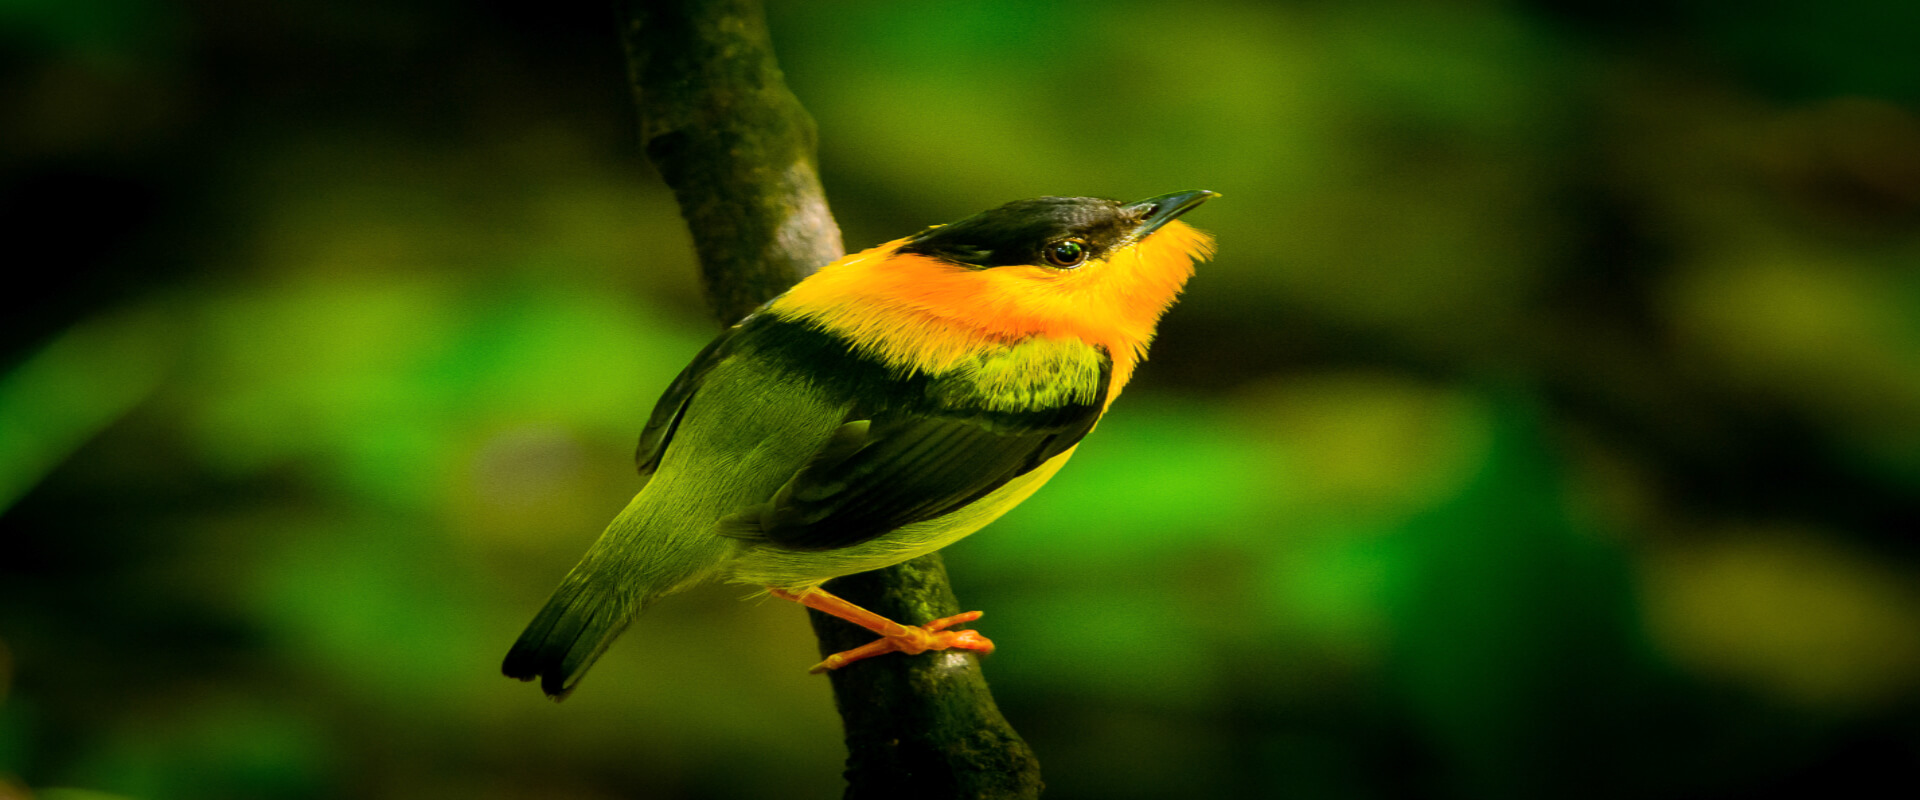 Drake Bay Bird Watching Tour | Costa Rica Jade Tours